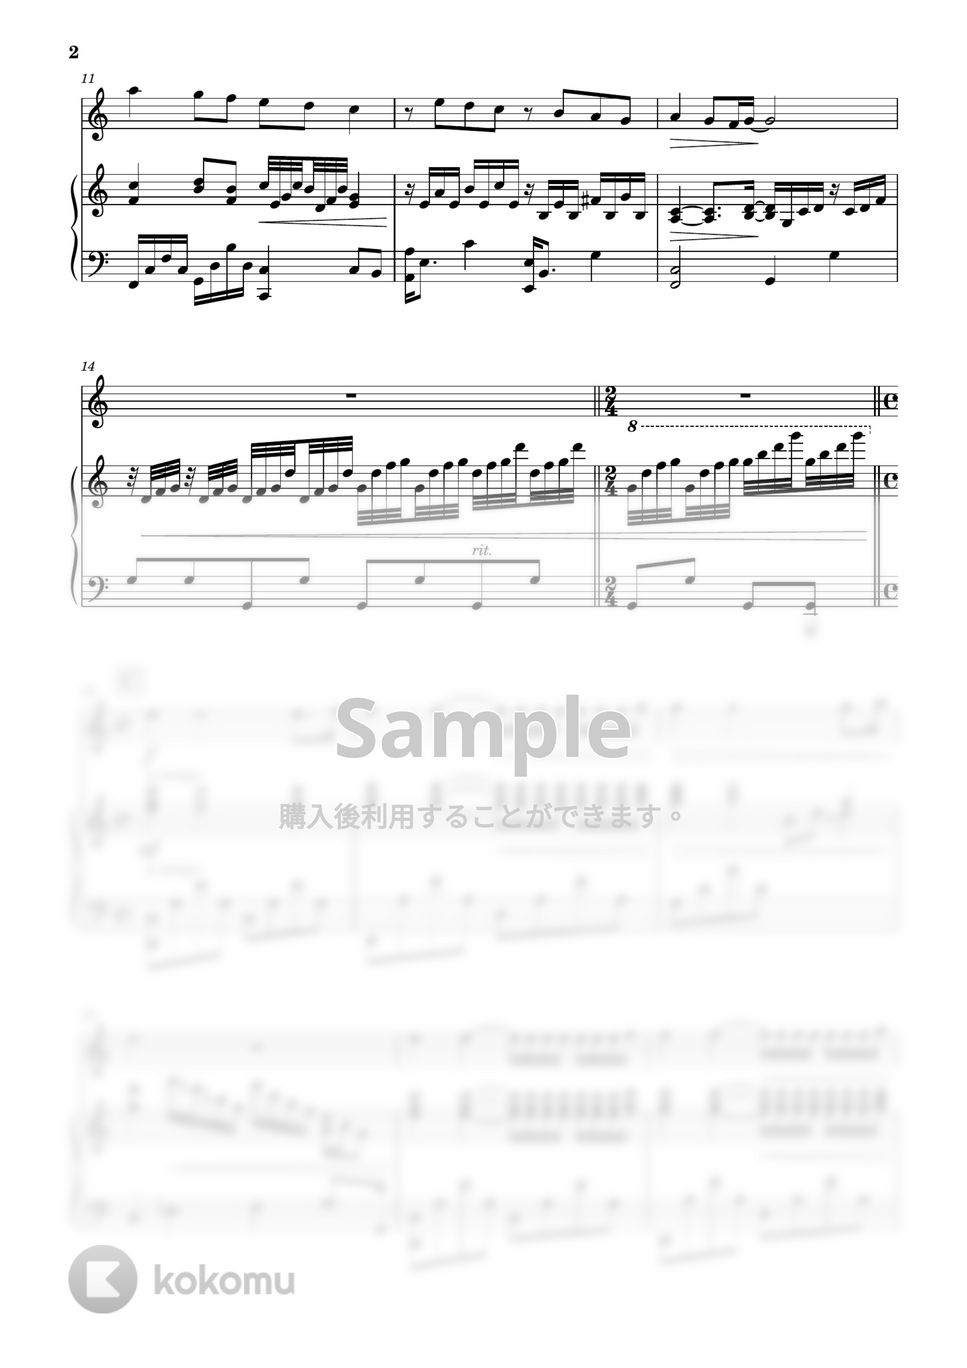 リチャード・クレイダーマン - 渚のアデリーヌ (フルート&ピアノ伴奏) by PiaFlu